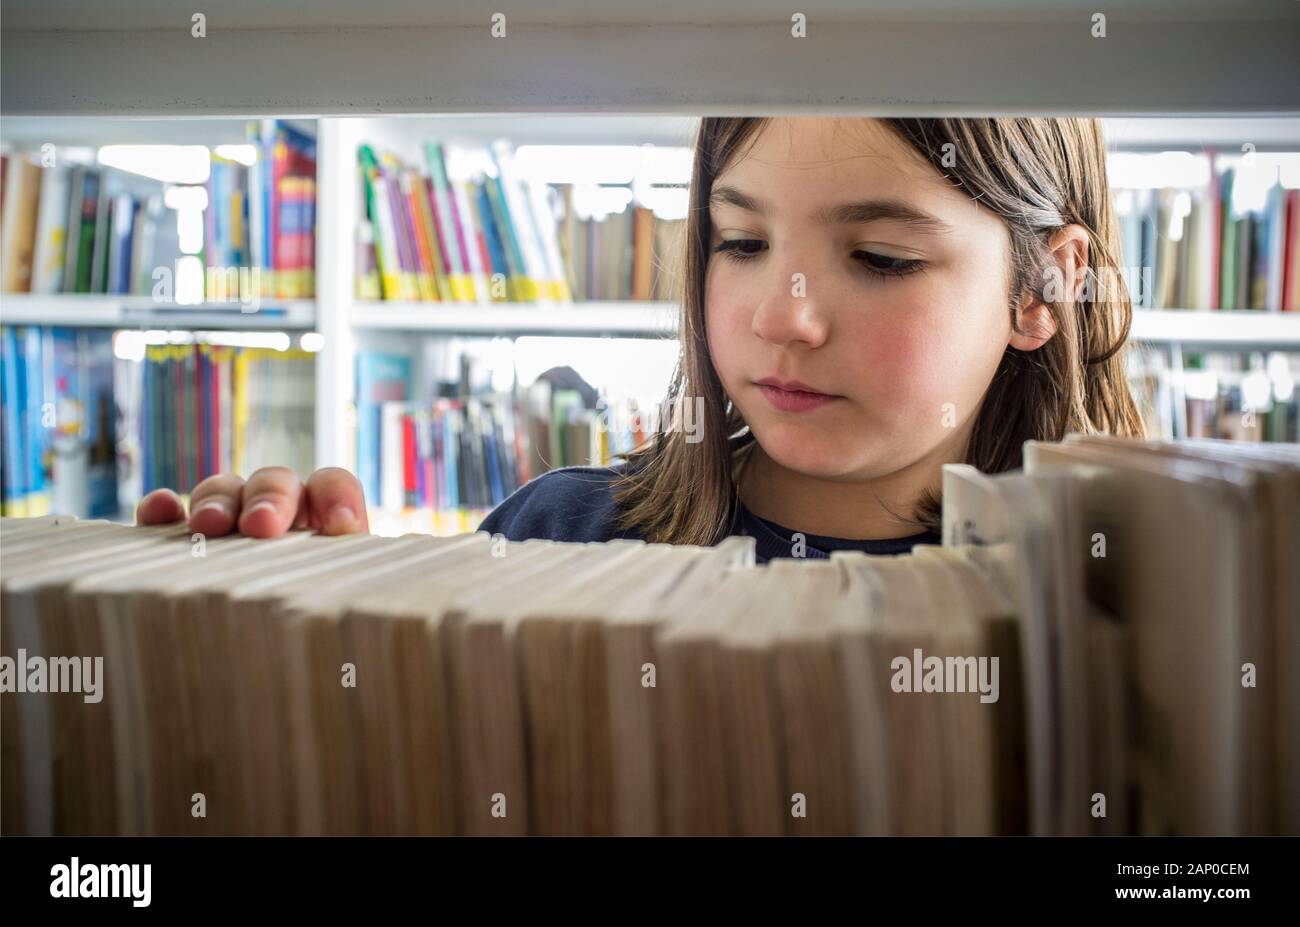 Jeune fille la sélection de livres de la bibliothèque étagère. La créativité et l'imagination des enfants concept. Banque D'Images